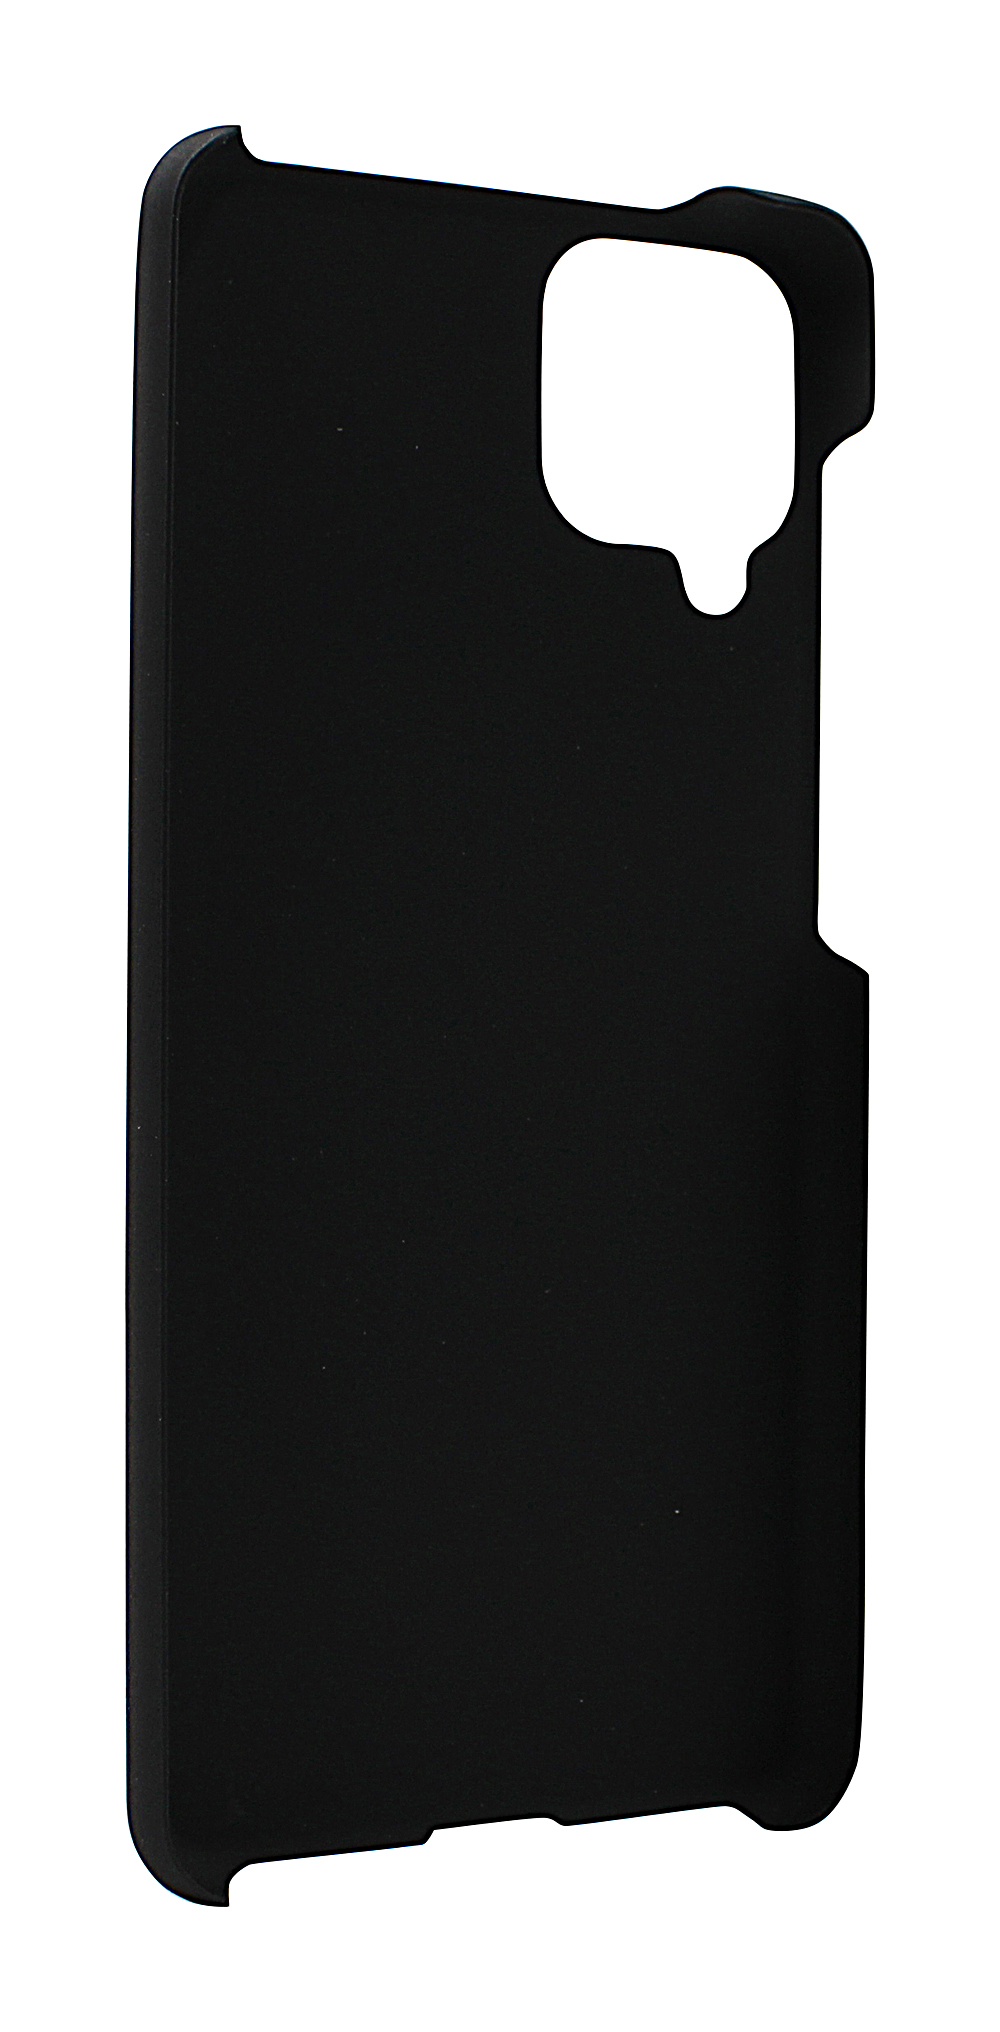 Skimblocker XL Magnet Wallet Samsung Galaxy A12